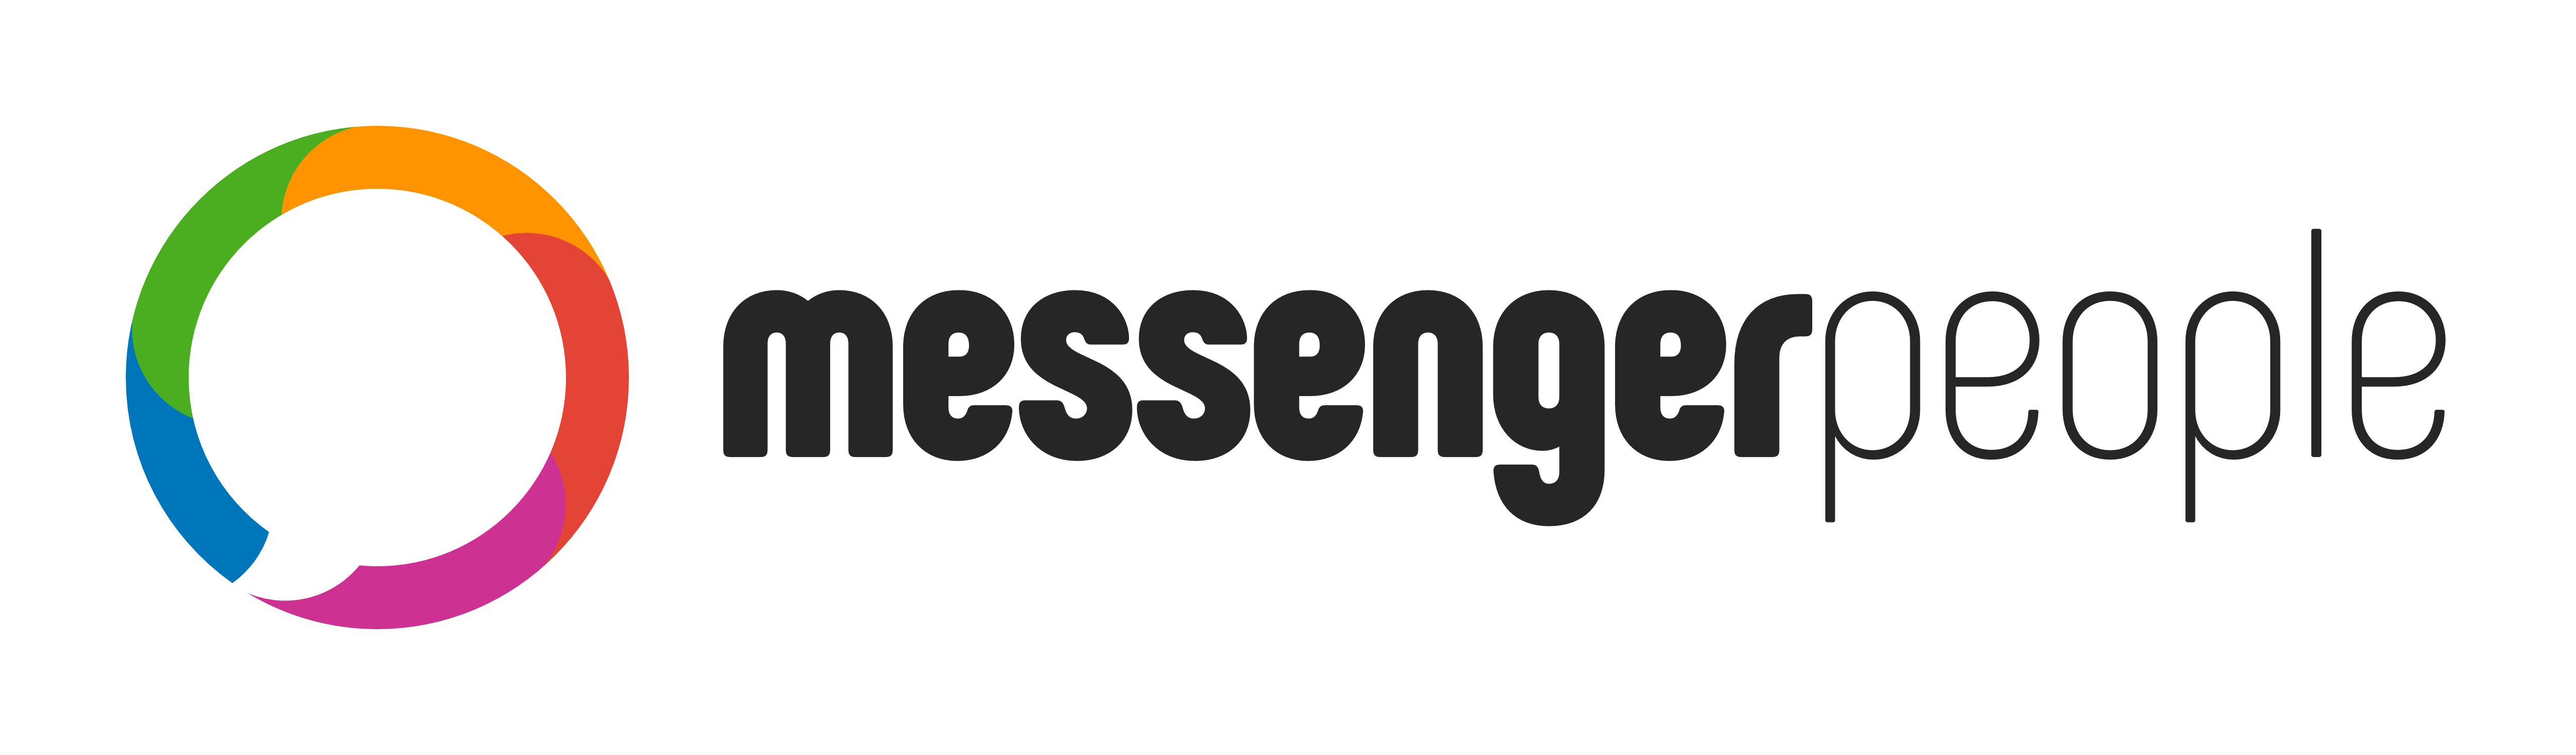 MessengerPeople_Logo